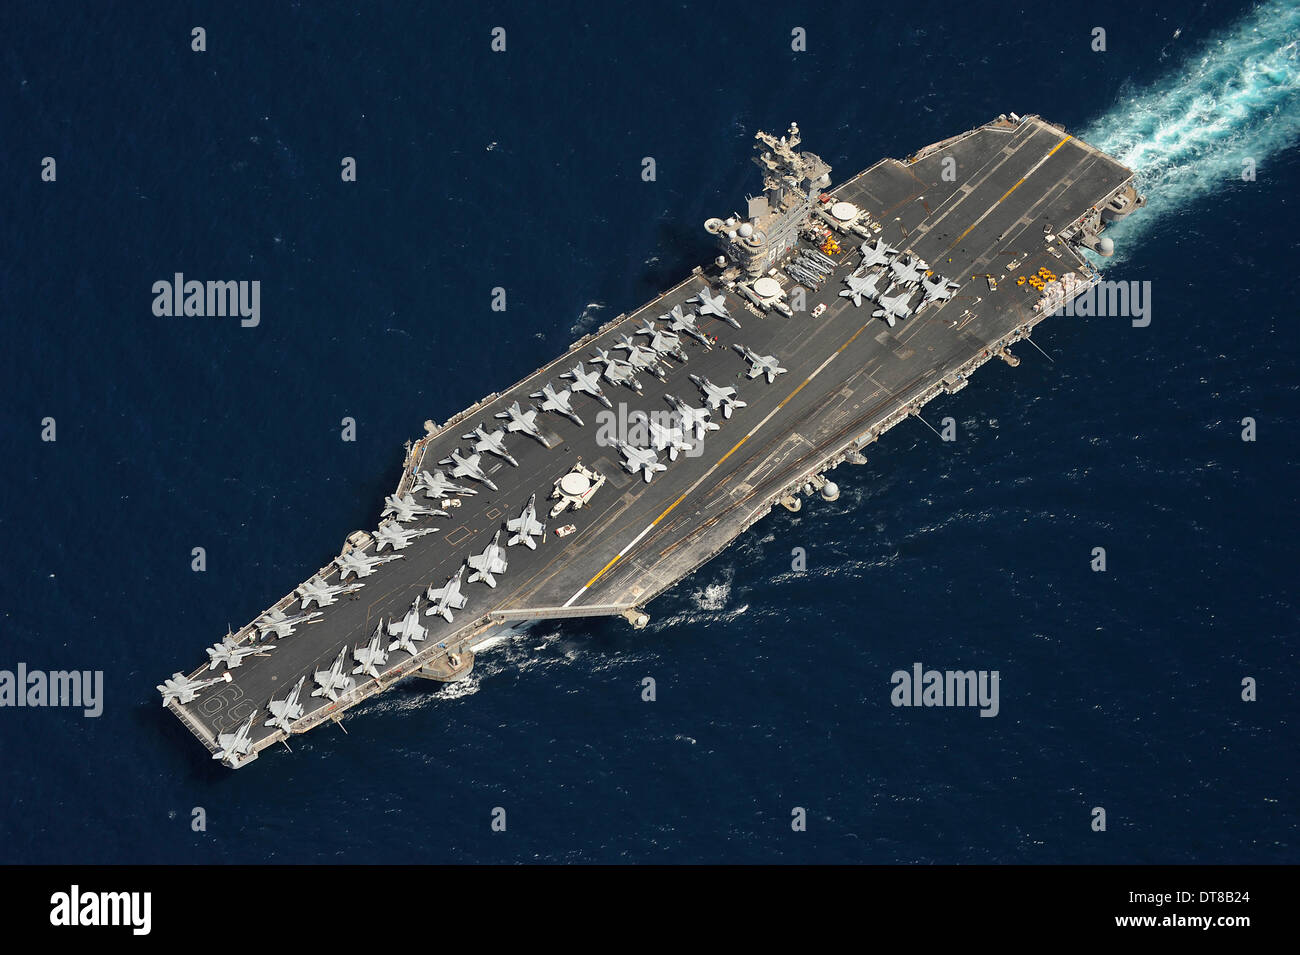 The aircraft carrier USS Dwight D. Eisenhower. Stock Photo